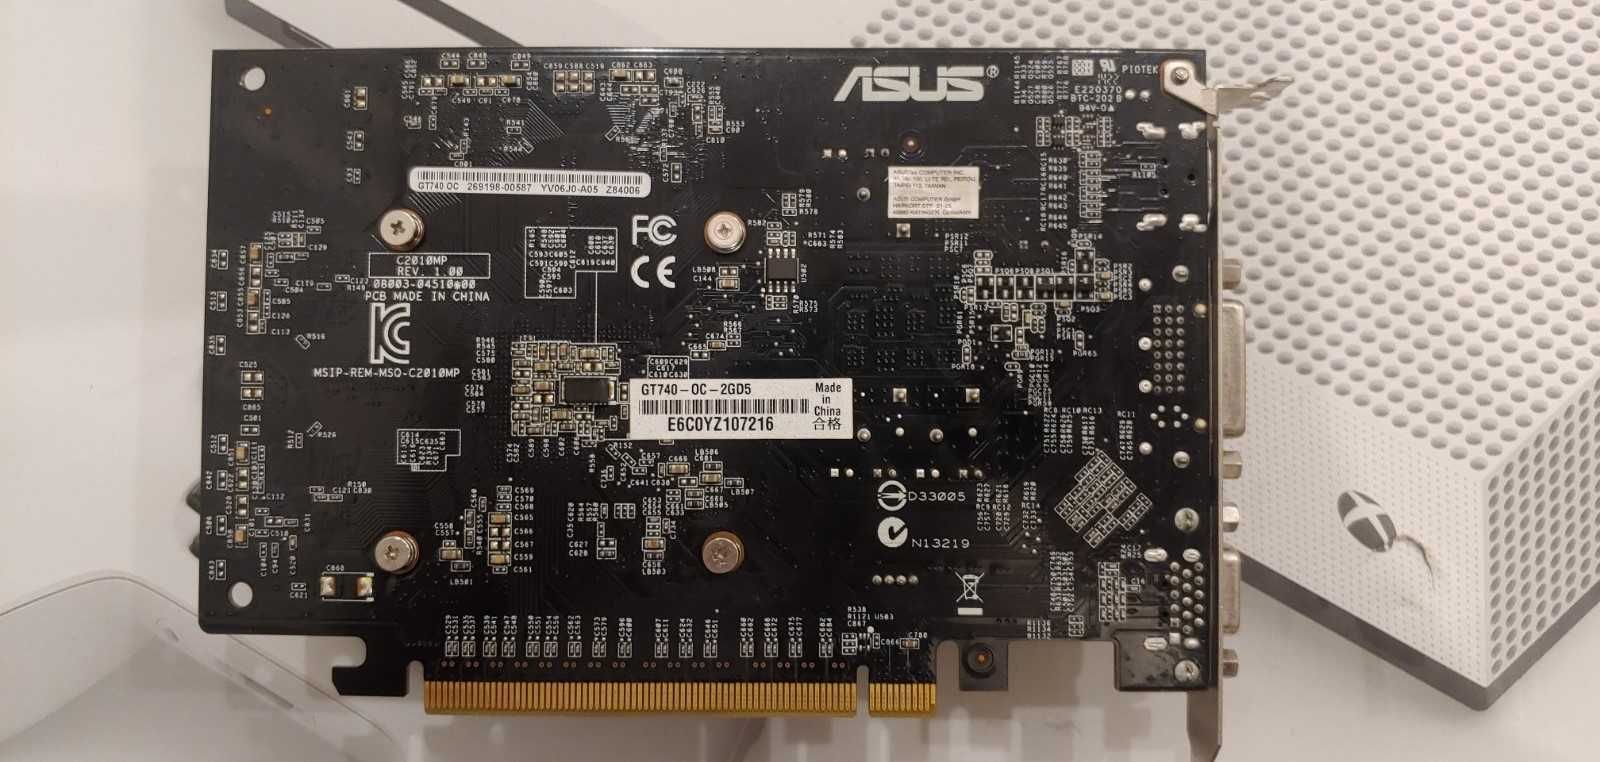 Nvidia Geforce 6600 GT, GT 740, 750 TI, AMD Radeon HD 2400 Pro